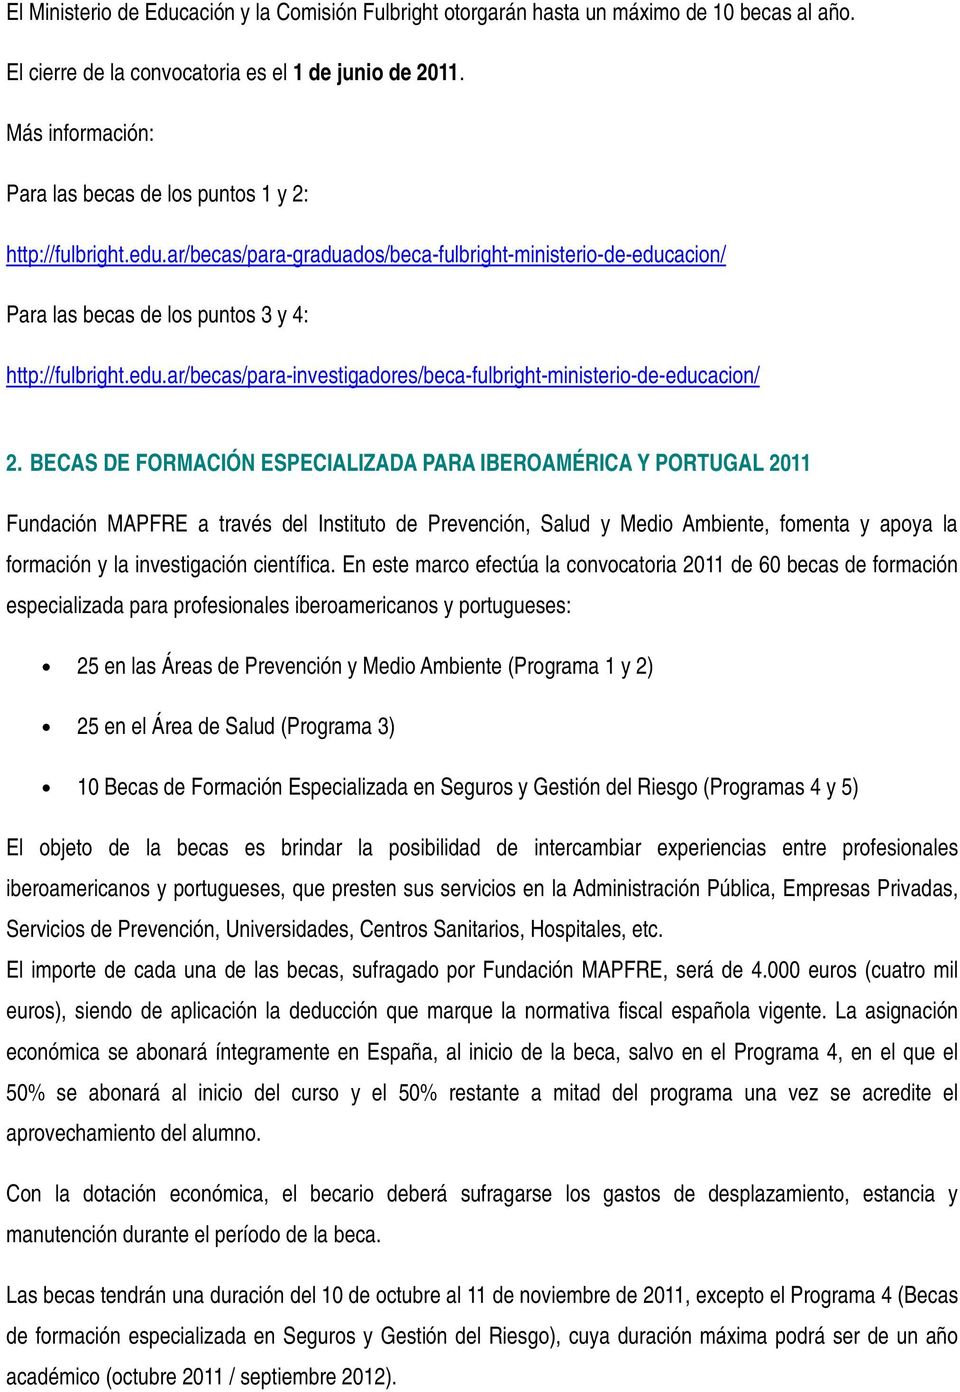 BECAS DE FORMACIÓN ESPECIALIZADA PARA IBEROAMÉRICA Y PORTUGAL 2011 Fundación MAPFRE a través del Instituto de Prevención, Salud y Medio Ambiente, fomenta y apoya la formación y la investigación